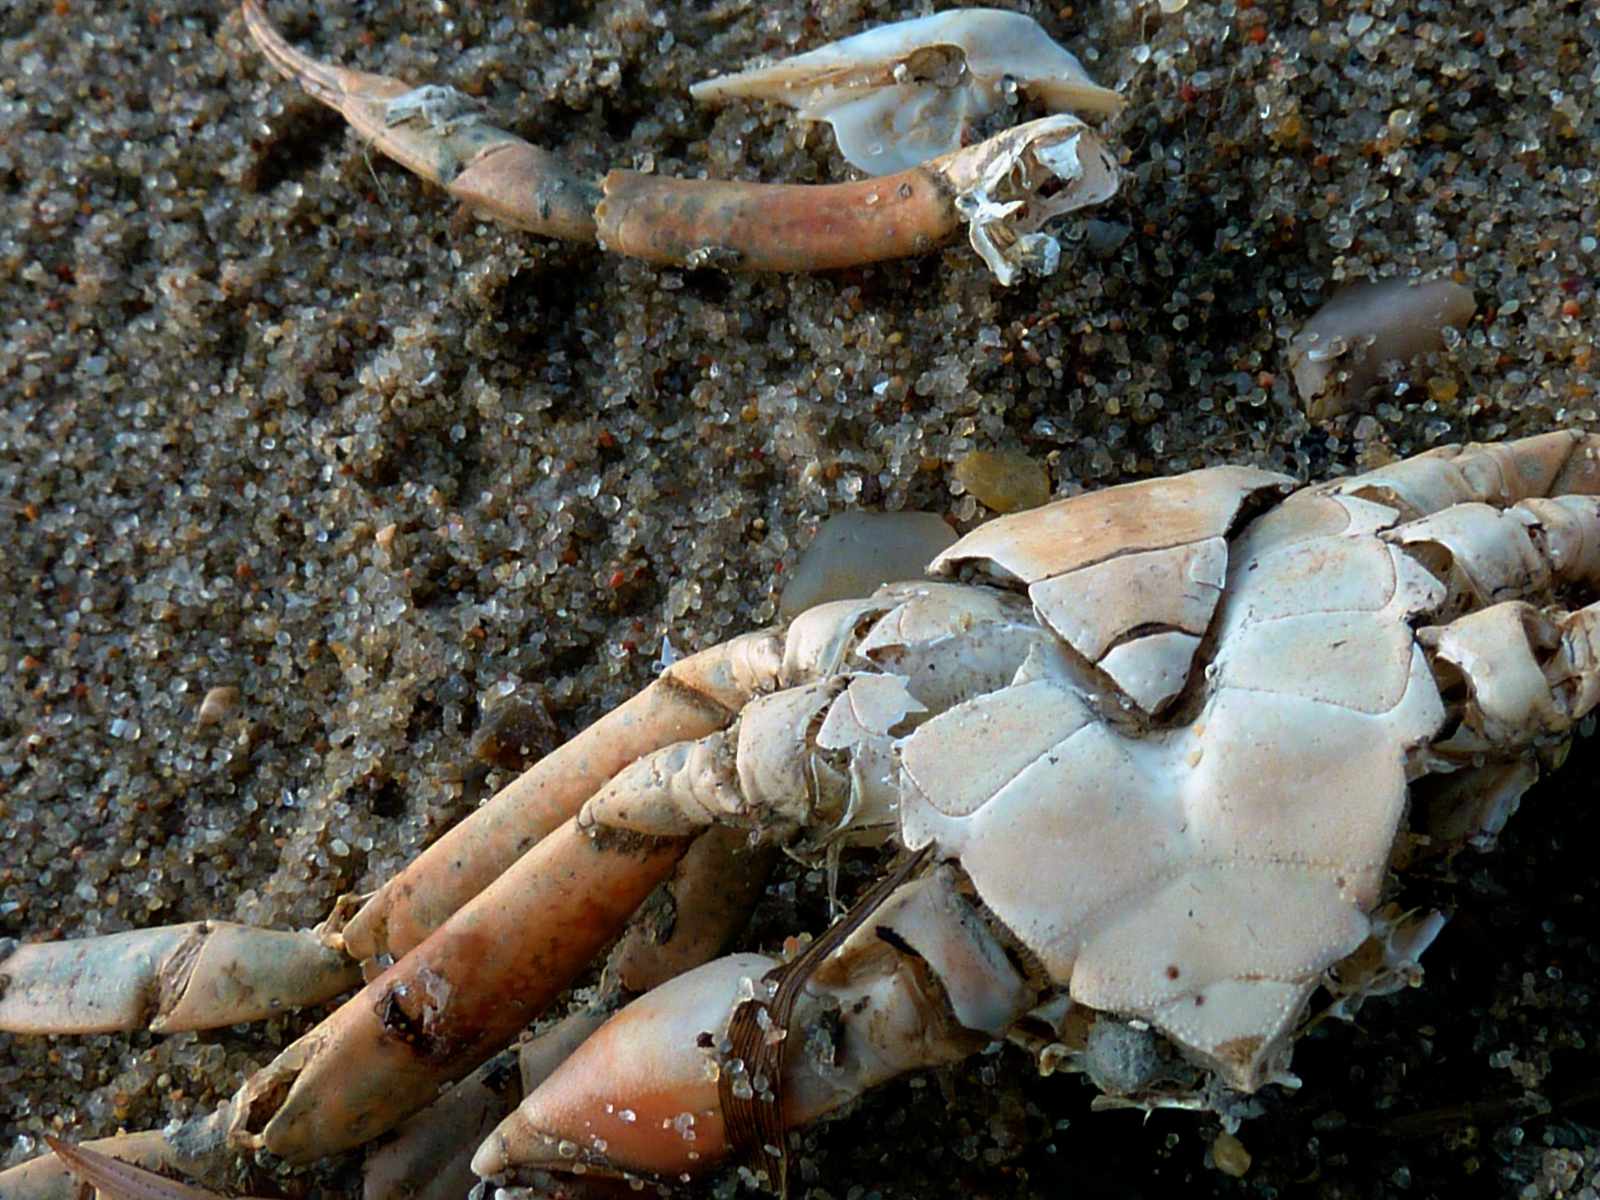 Dead crab on a beach